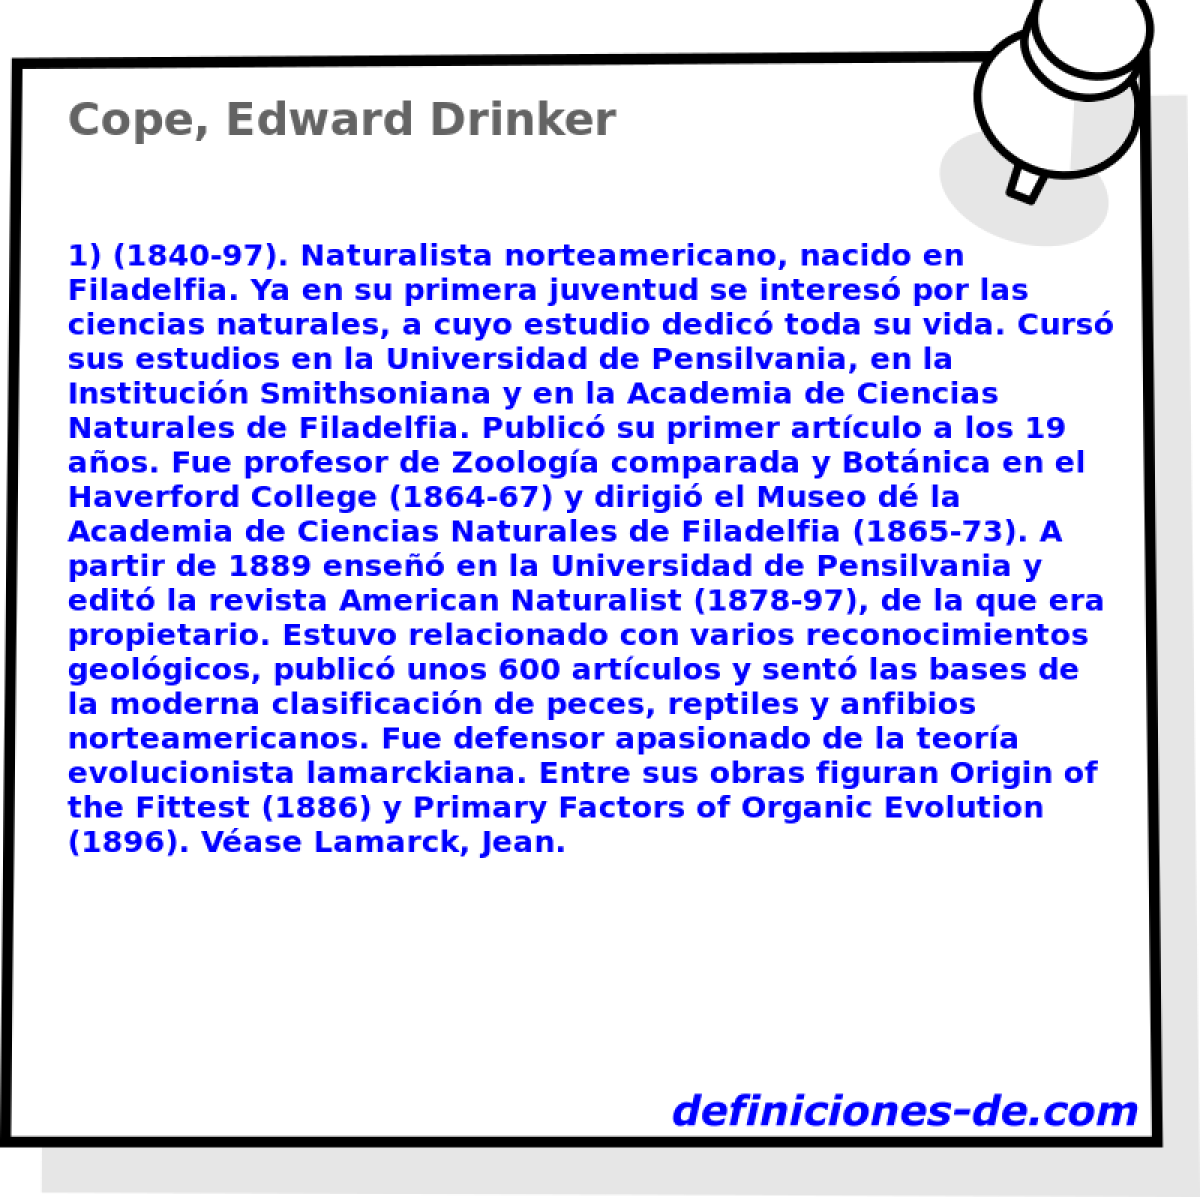 Cope, Edward Drinker 